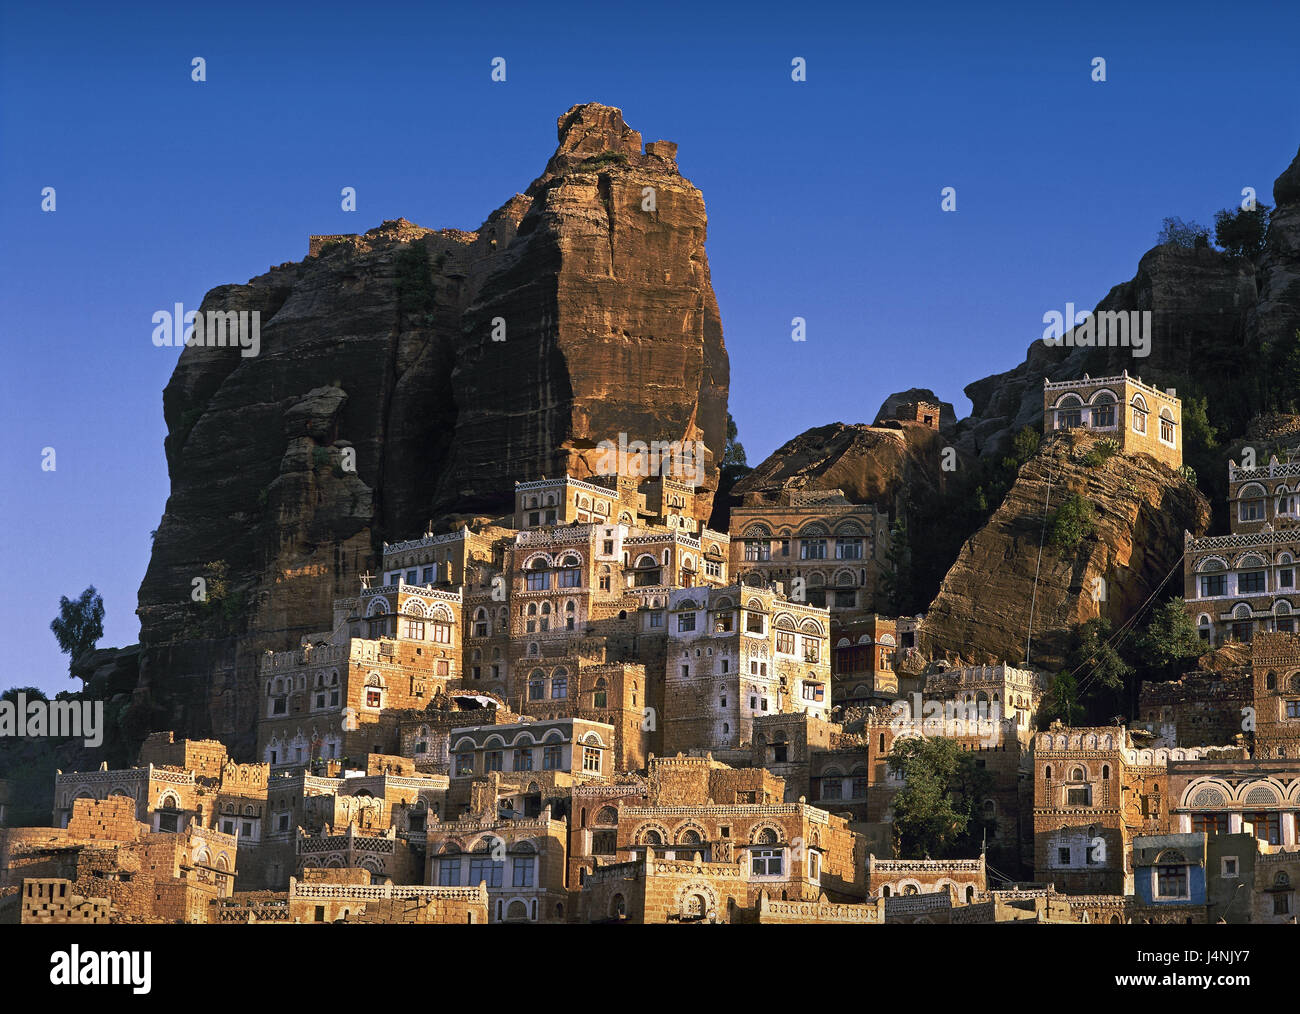 Yemen, Hadda, rock, case, il Vicino Oriente, luogo, villaggio, case residenziali, tradizionalmente, Yemen, Est, architettura, storicamente, edificio, mucky edificio, mucky case, montagne, Foto Stock